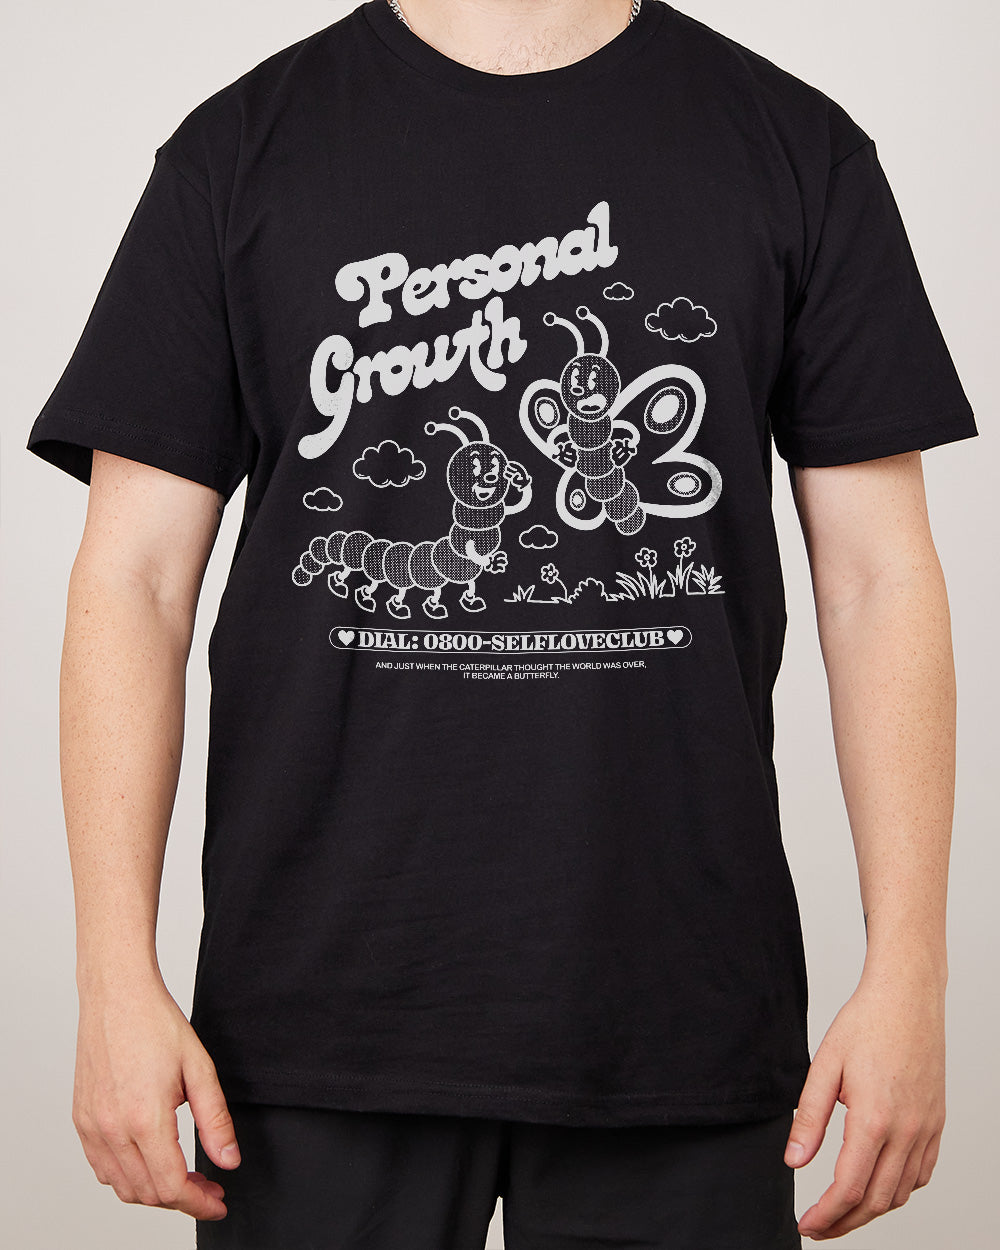 Personal Growth T-Shirt Australia Online #colour_black